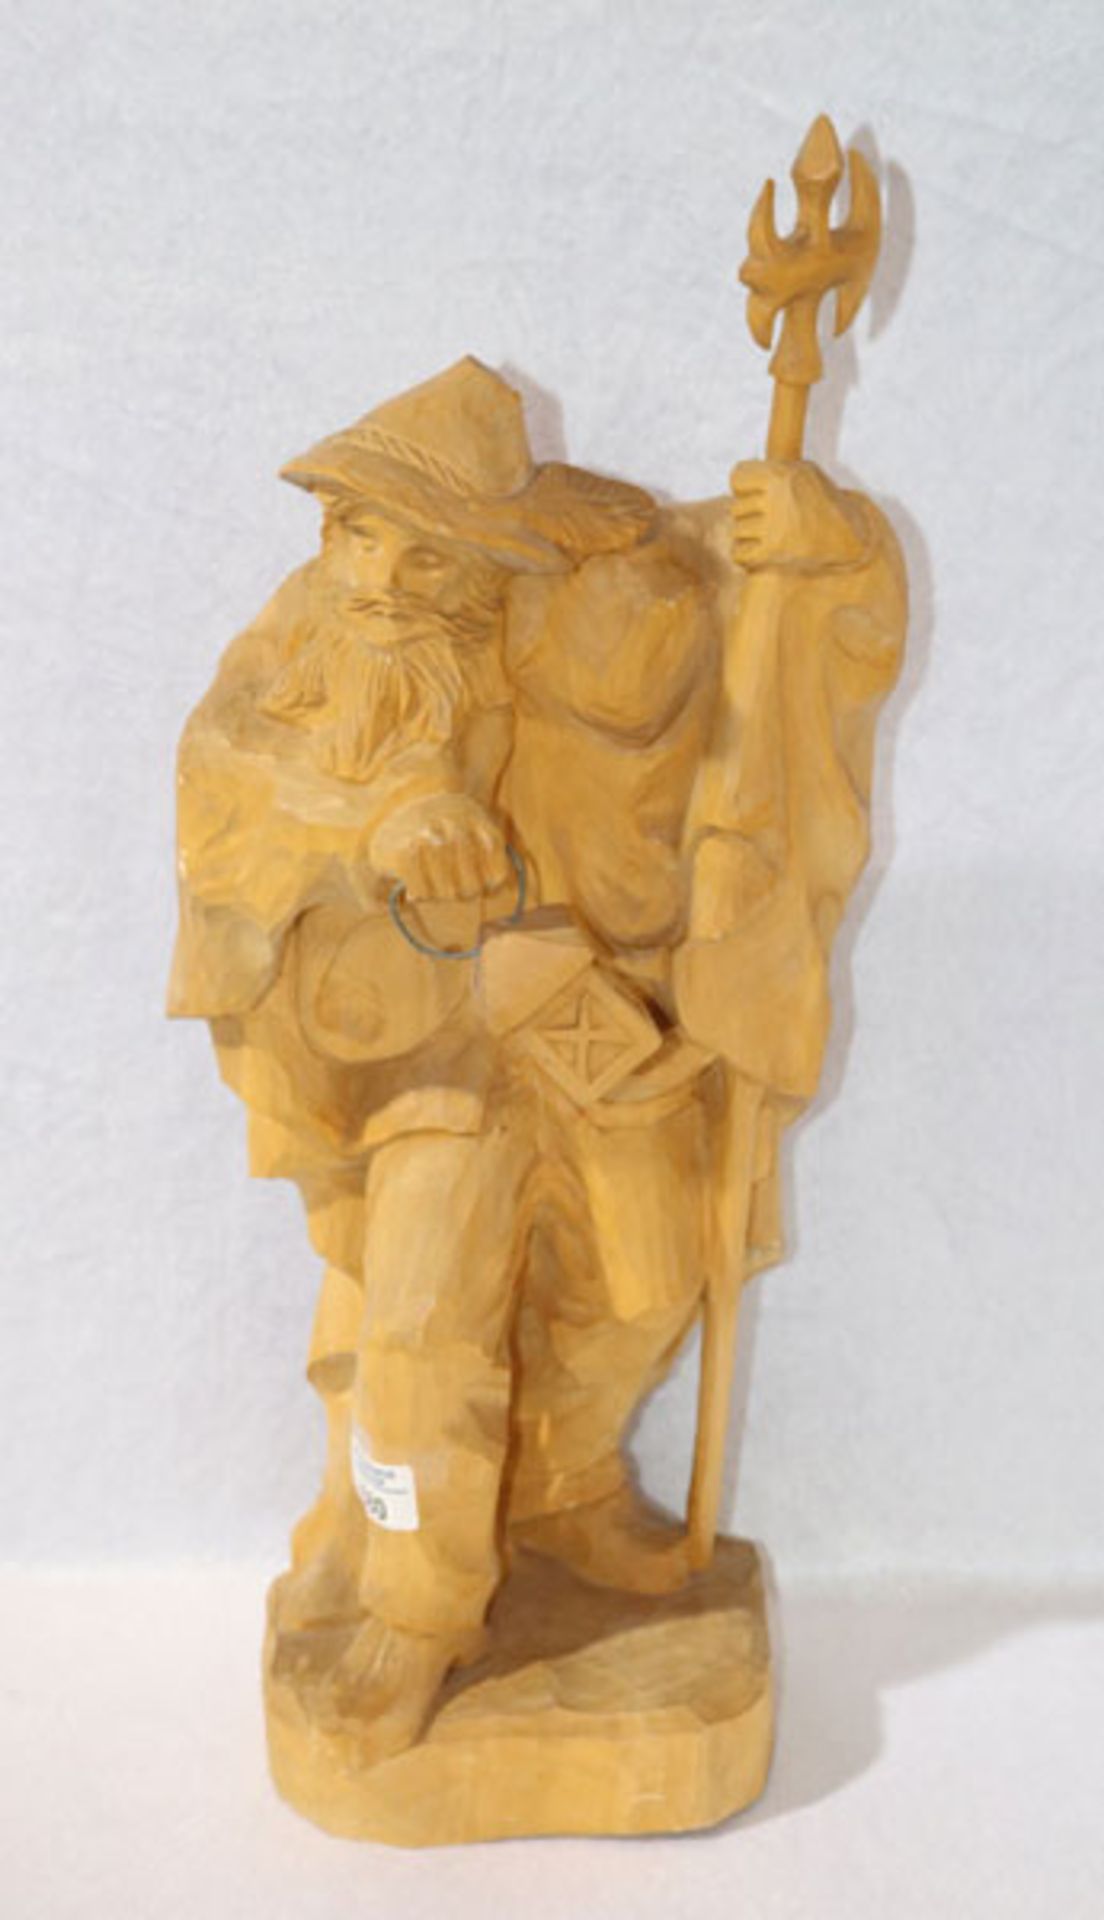 Holz Figurenskulptur 'Nachtwächter', ungefaßt, H 57 cm, B 25 cm, T 16 cm